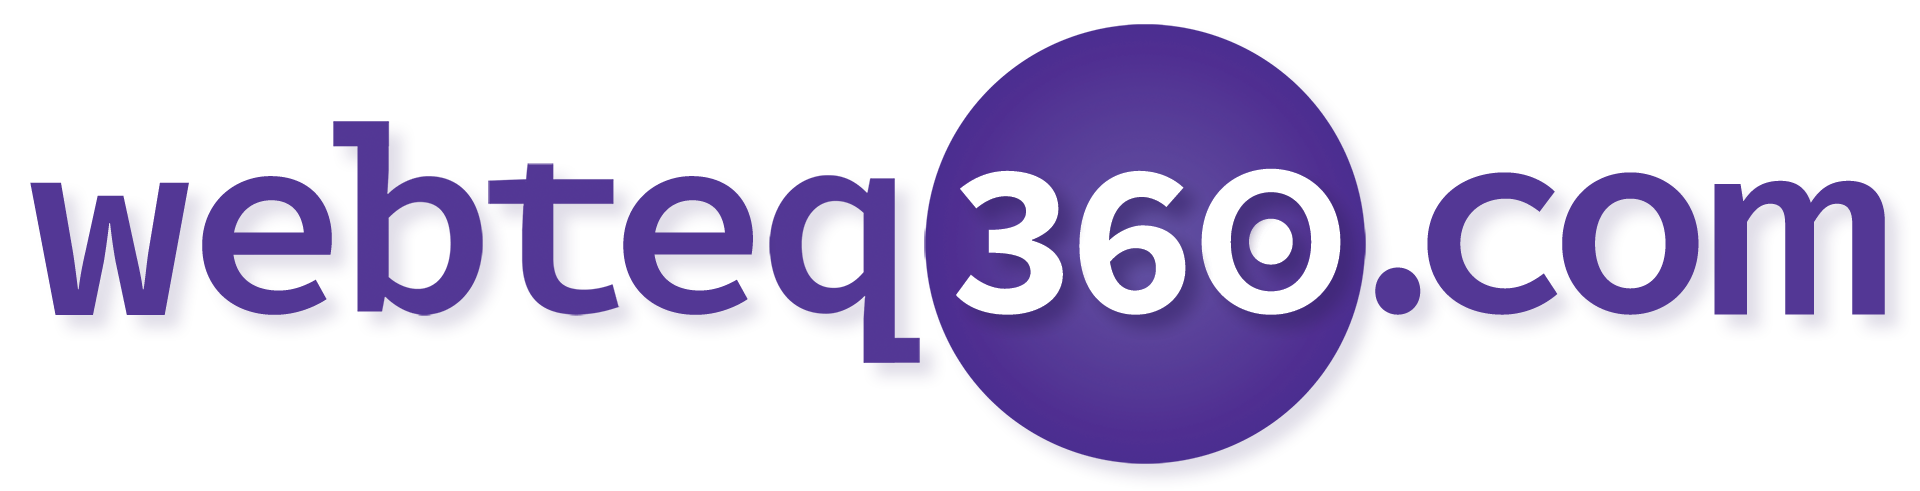 webteq360.com